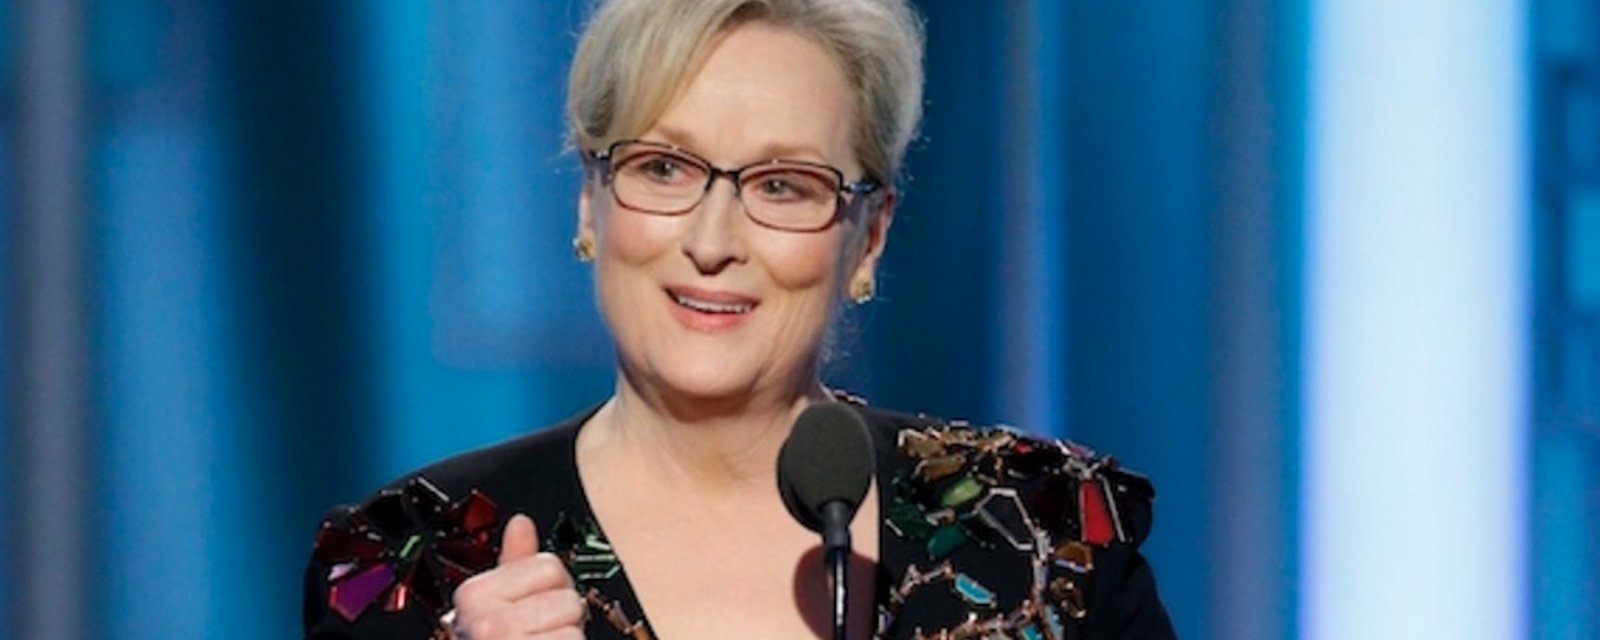 Voici le fameux discours de Meryl Streep en français...